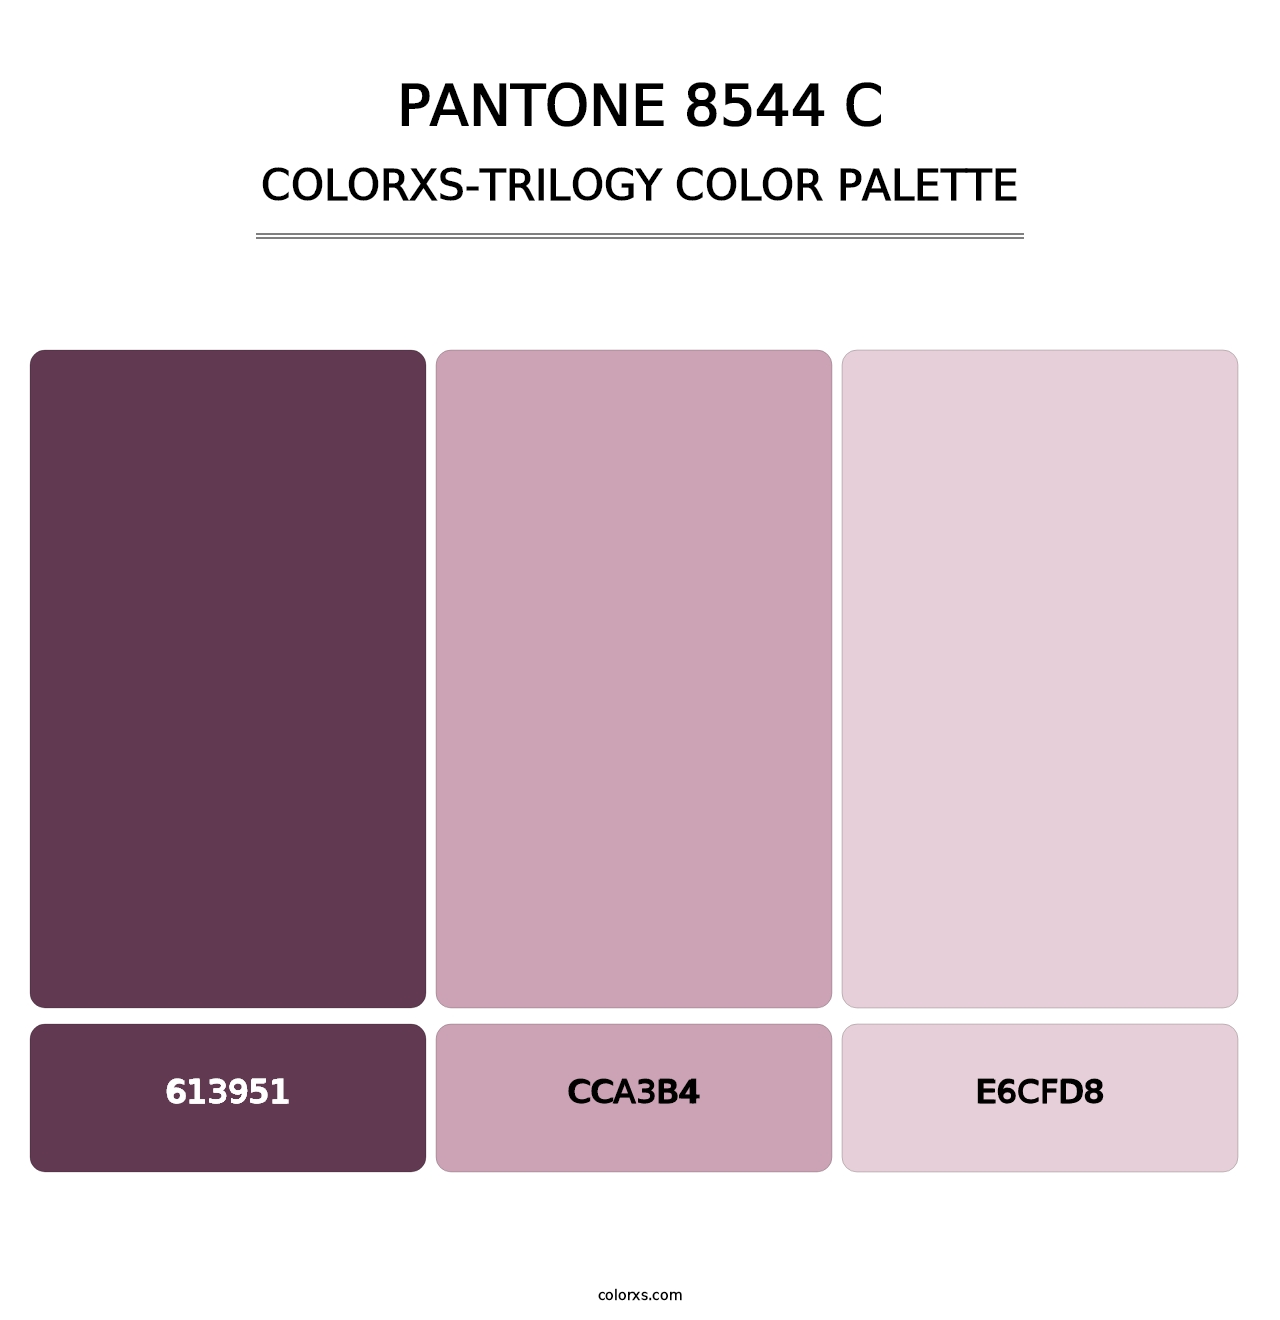 PANTONE 8544 C - Colorxs Trilogy Palette